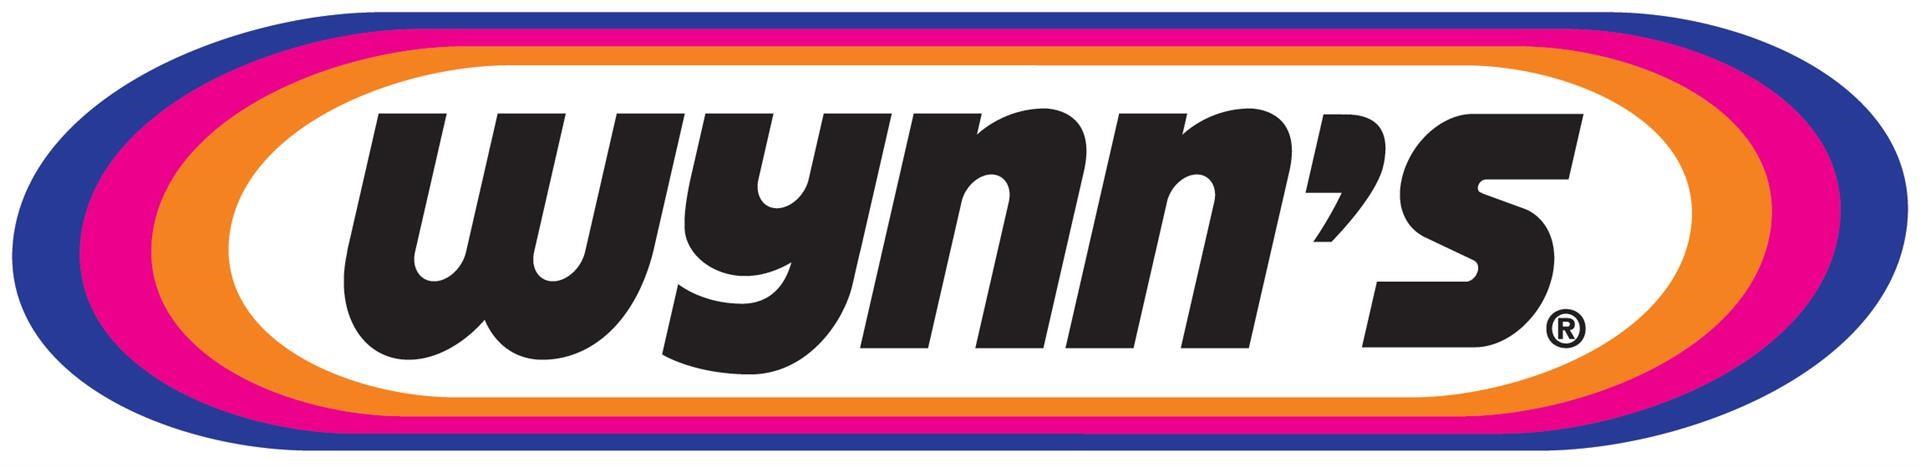 Wynn's (additifs)_28.jpg